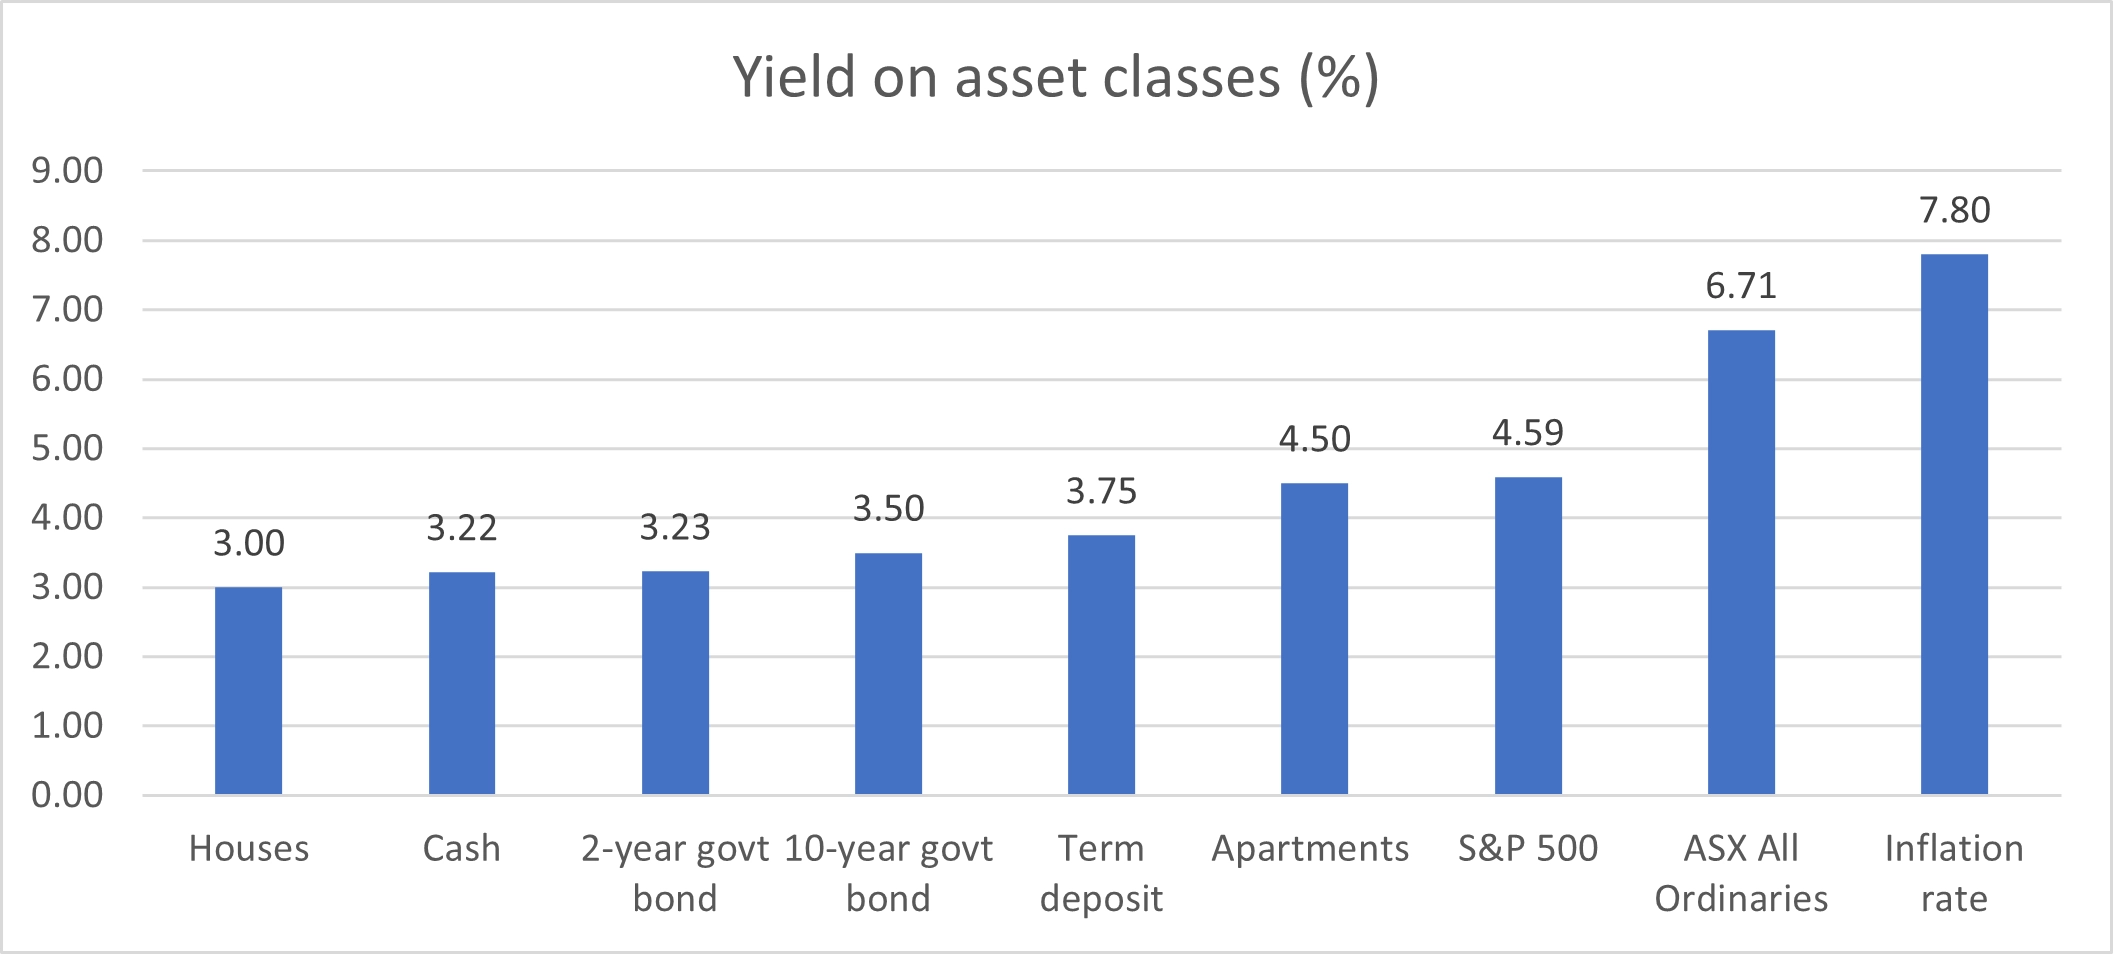 Asset class yields